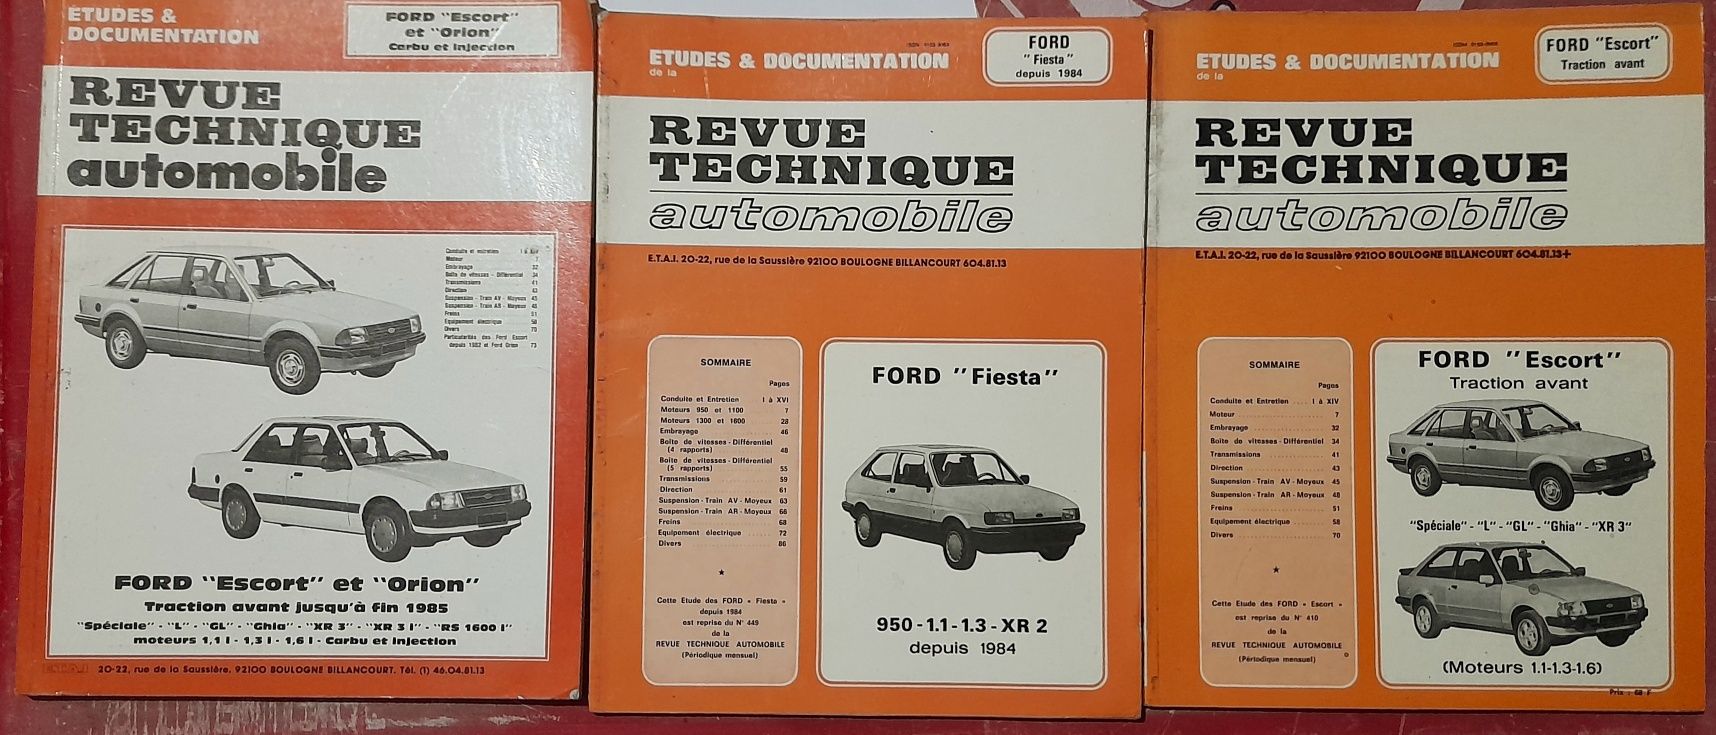 Revue technique automobile, revista técnica automóvel